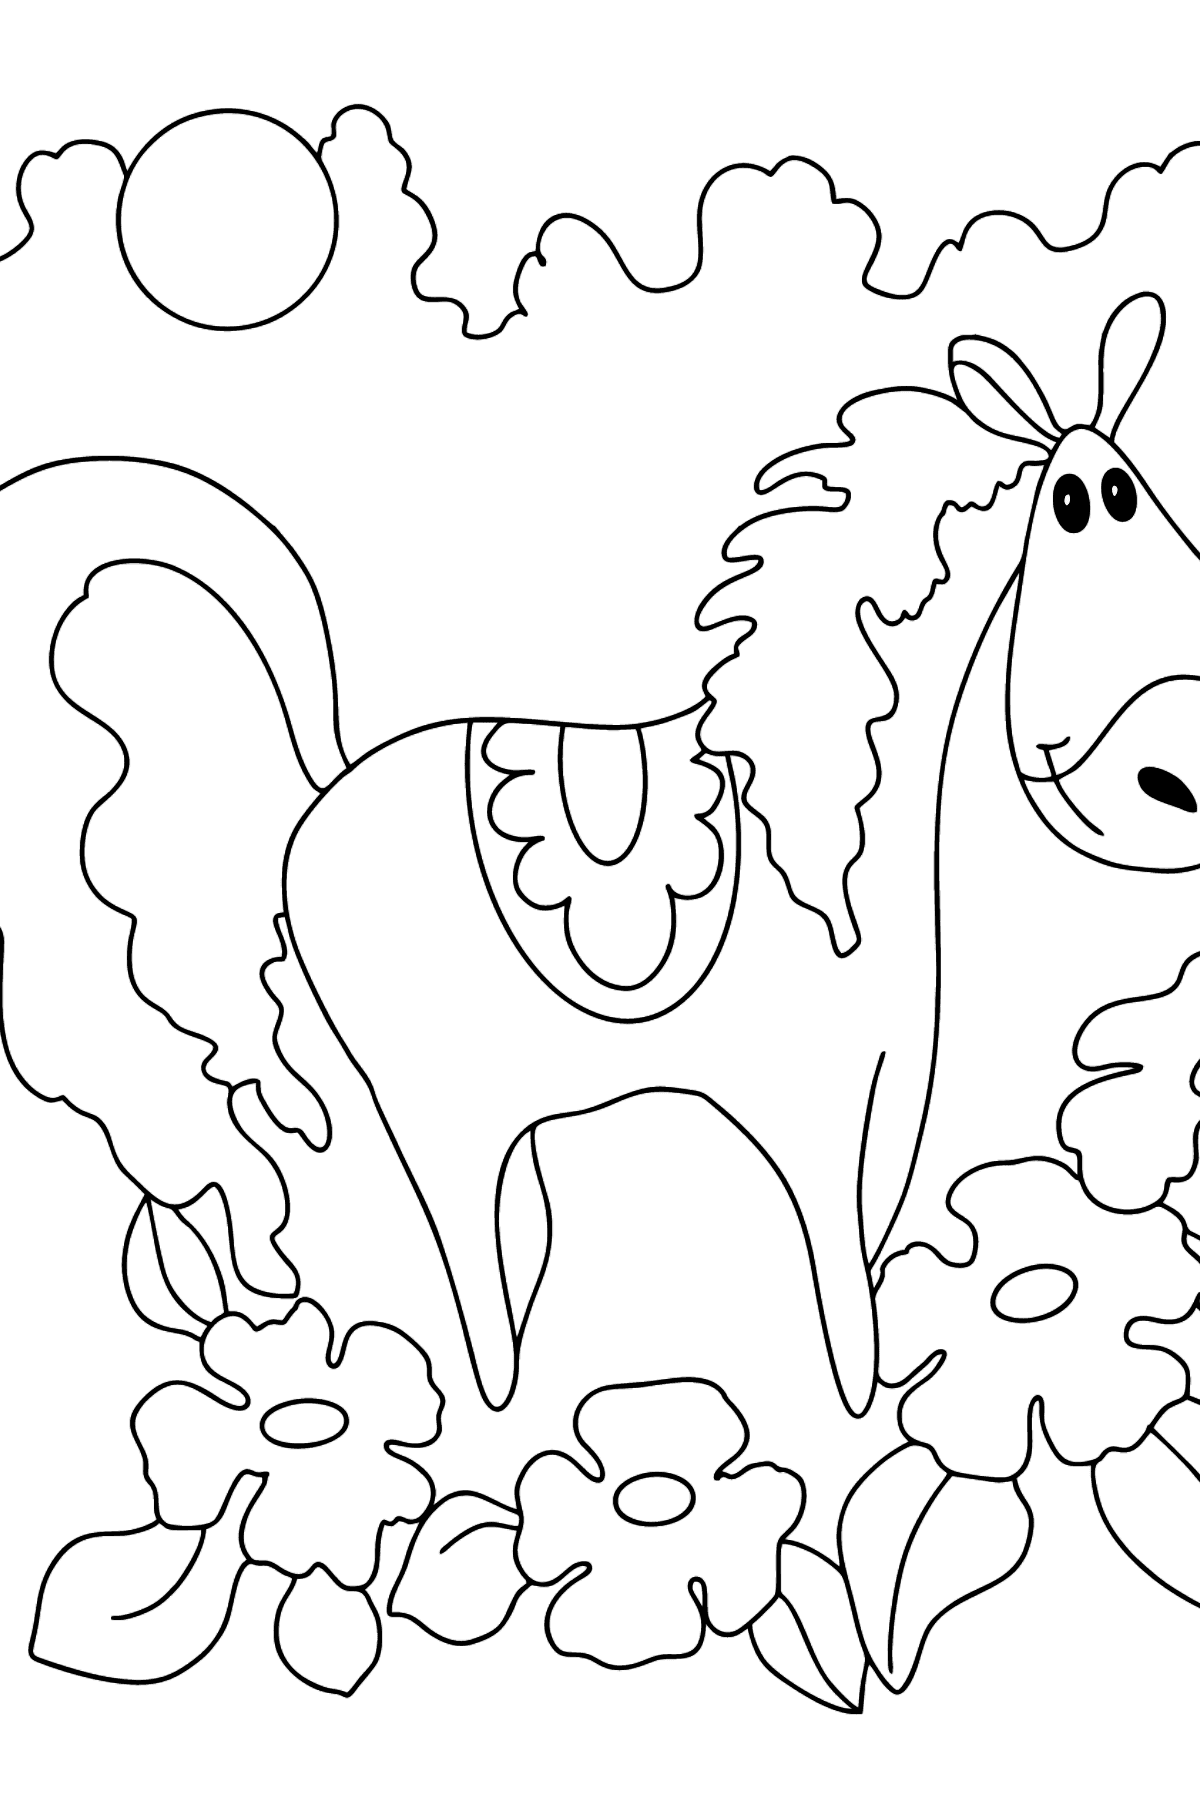 Раскраска лошадь для детей от 5 лет - Картинки для Детей